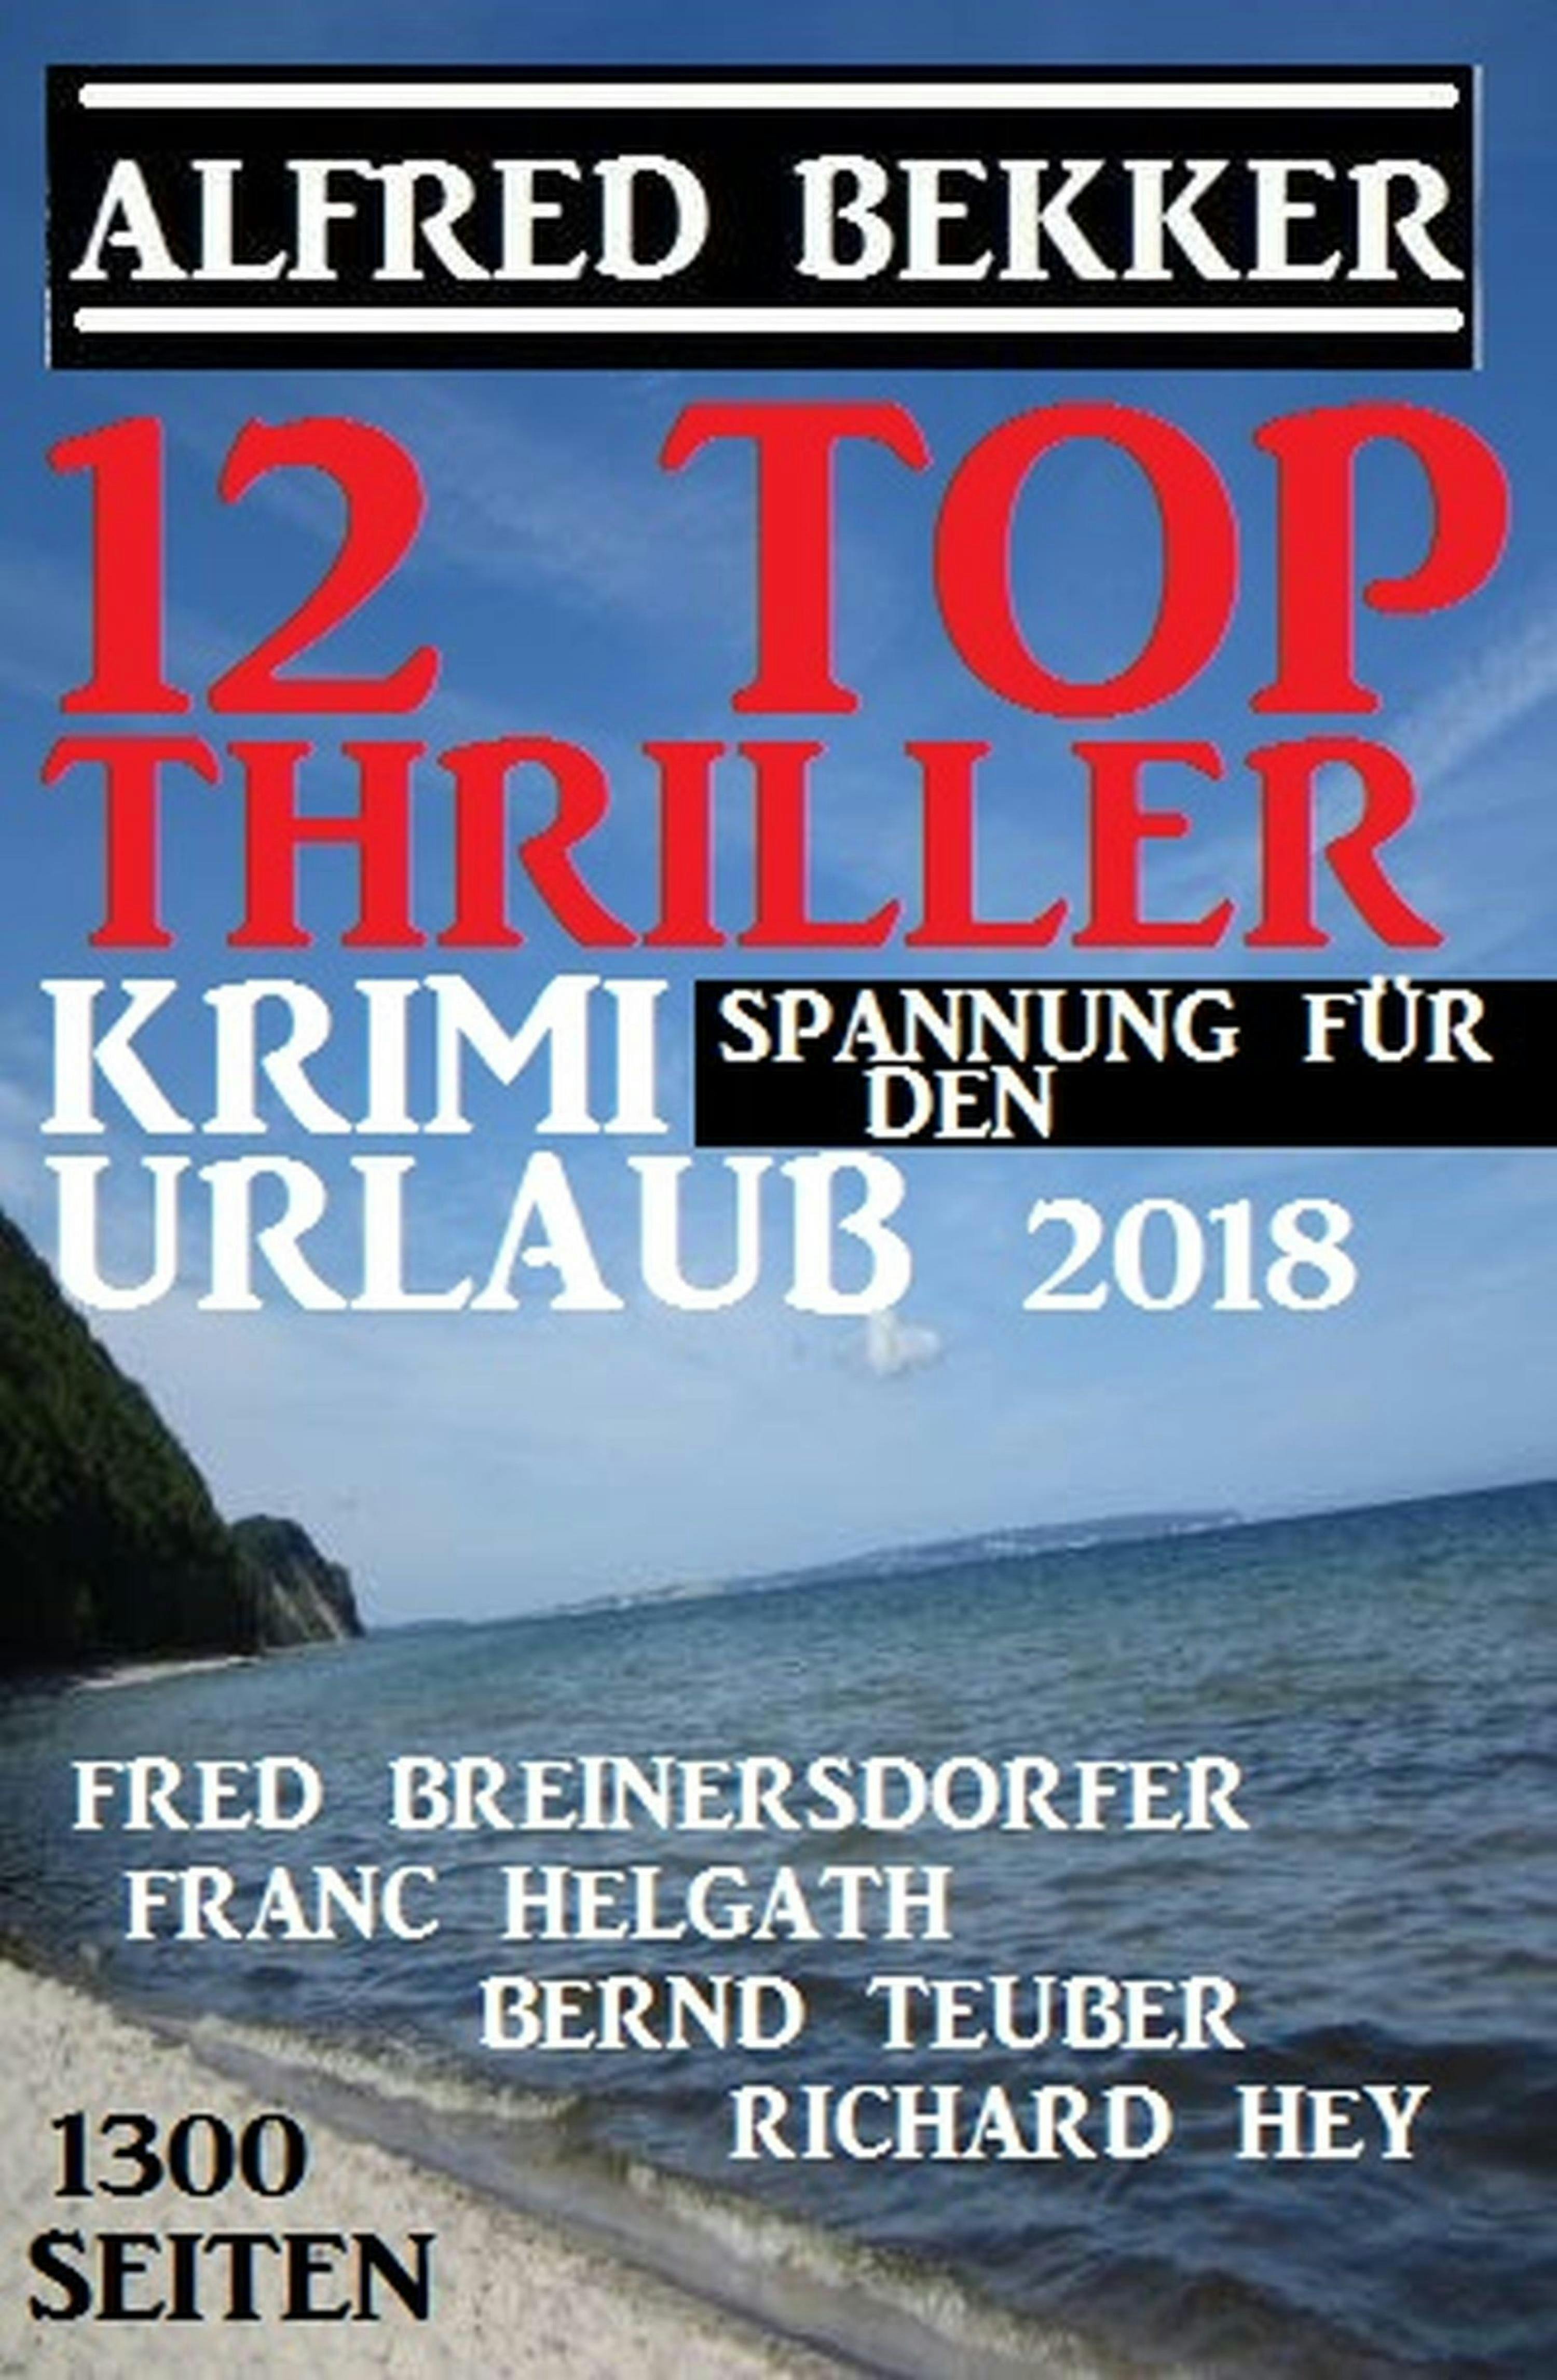 12 Top Thriller: Krimi Spannung für den Urlaub 2018 - Alfred Bekker, Richard Hey, Fred Breinersdorfer, Franc Helgath, Bernd Teuber